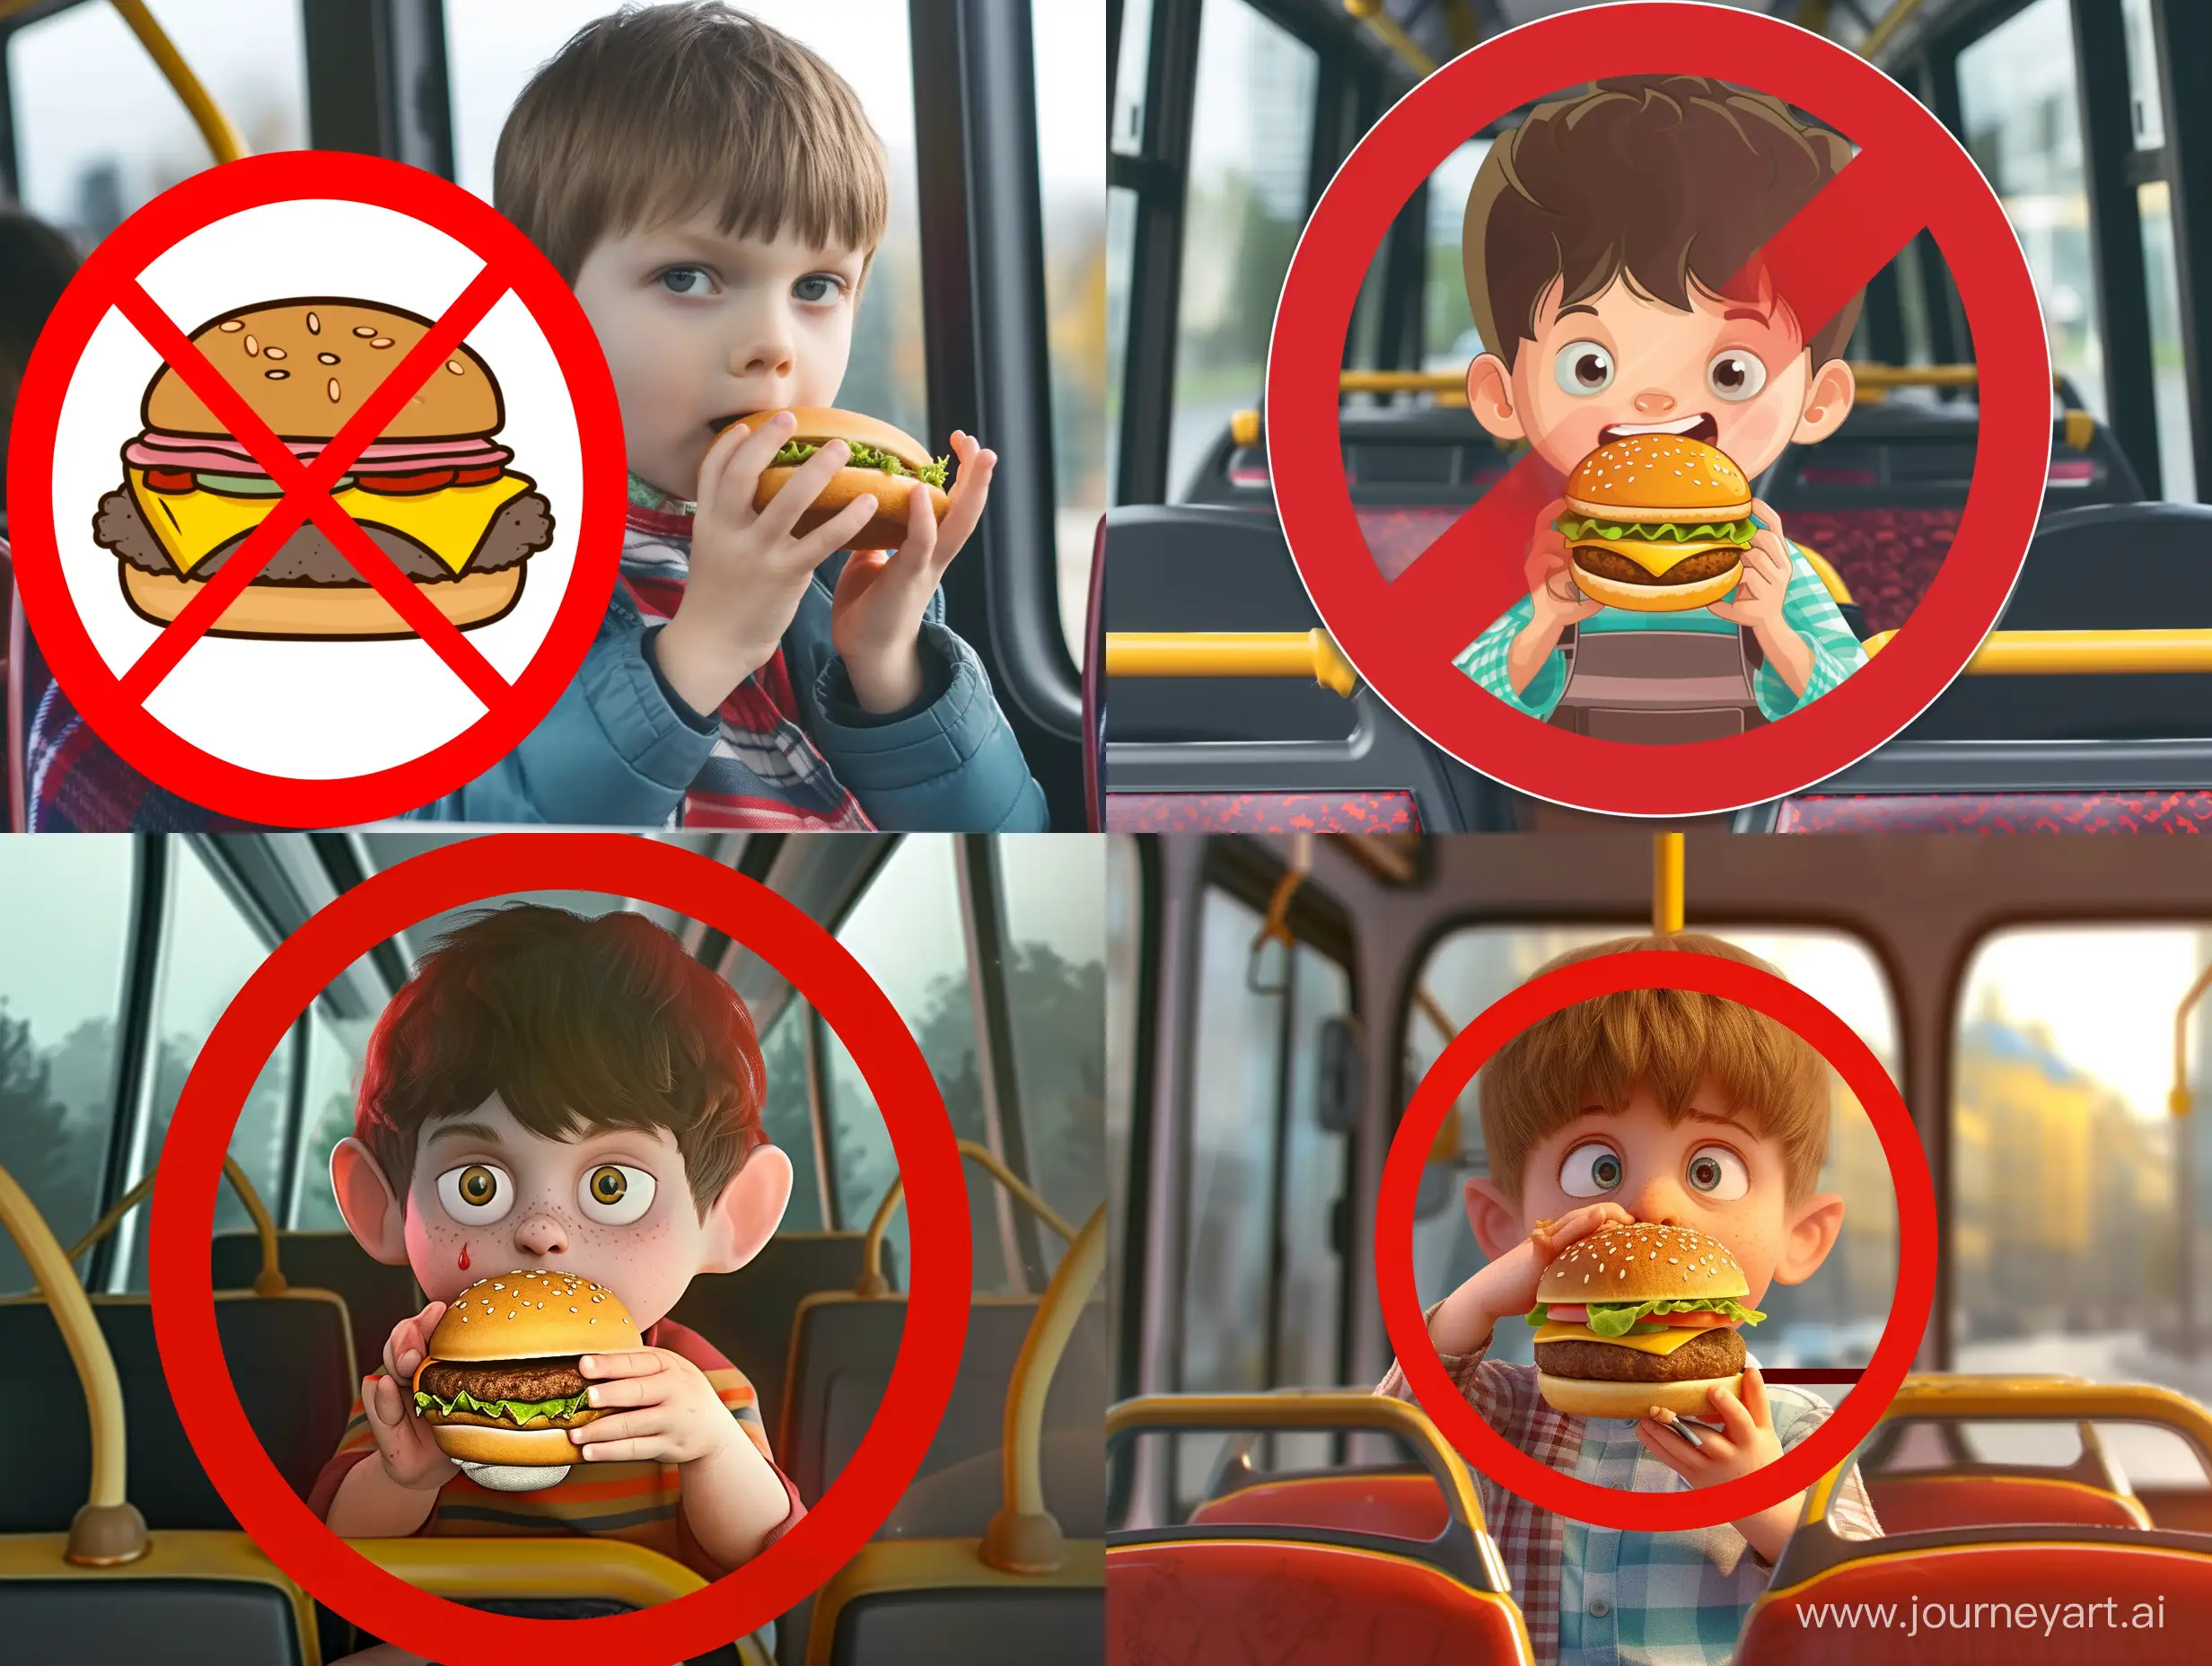 Playful-Boy-Enjoying-Hamburger-Ride-Whimsical-Cartoon-Image